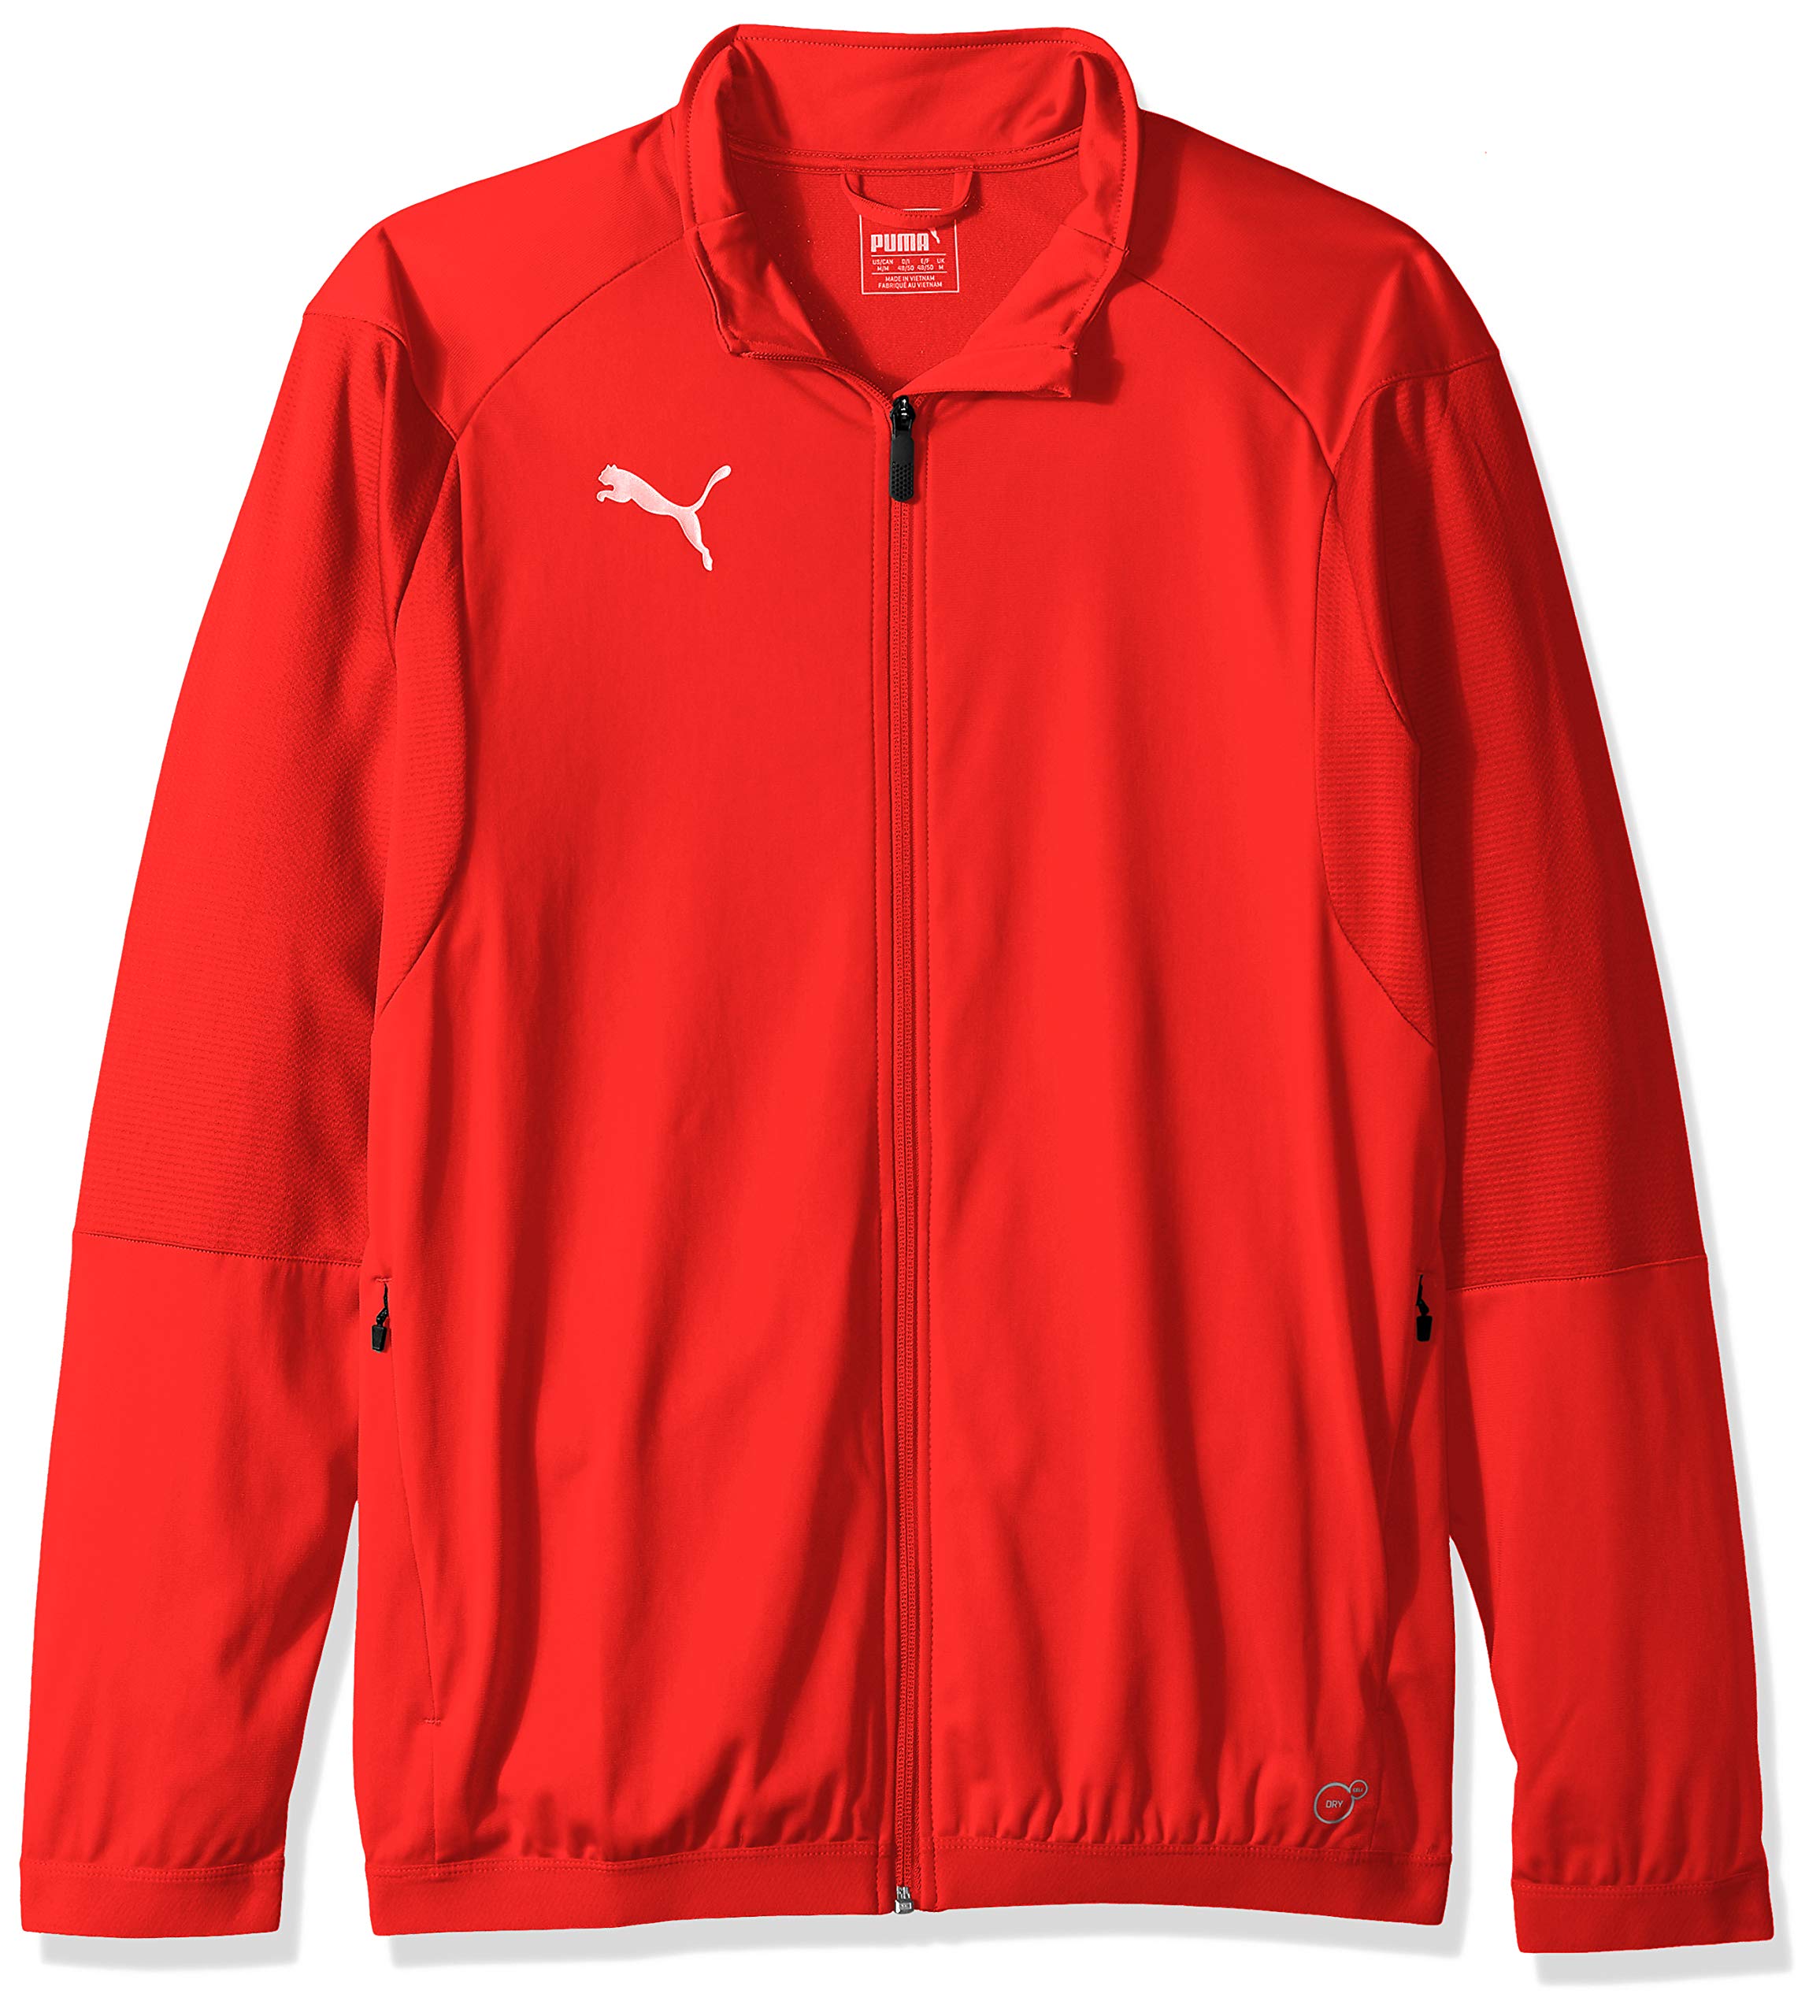 PUMA Men Liga Training Jacket - Red/White - X-Large